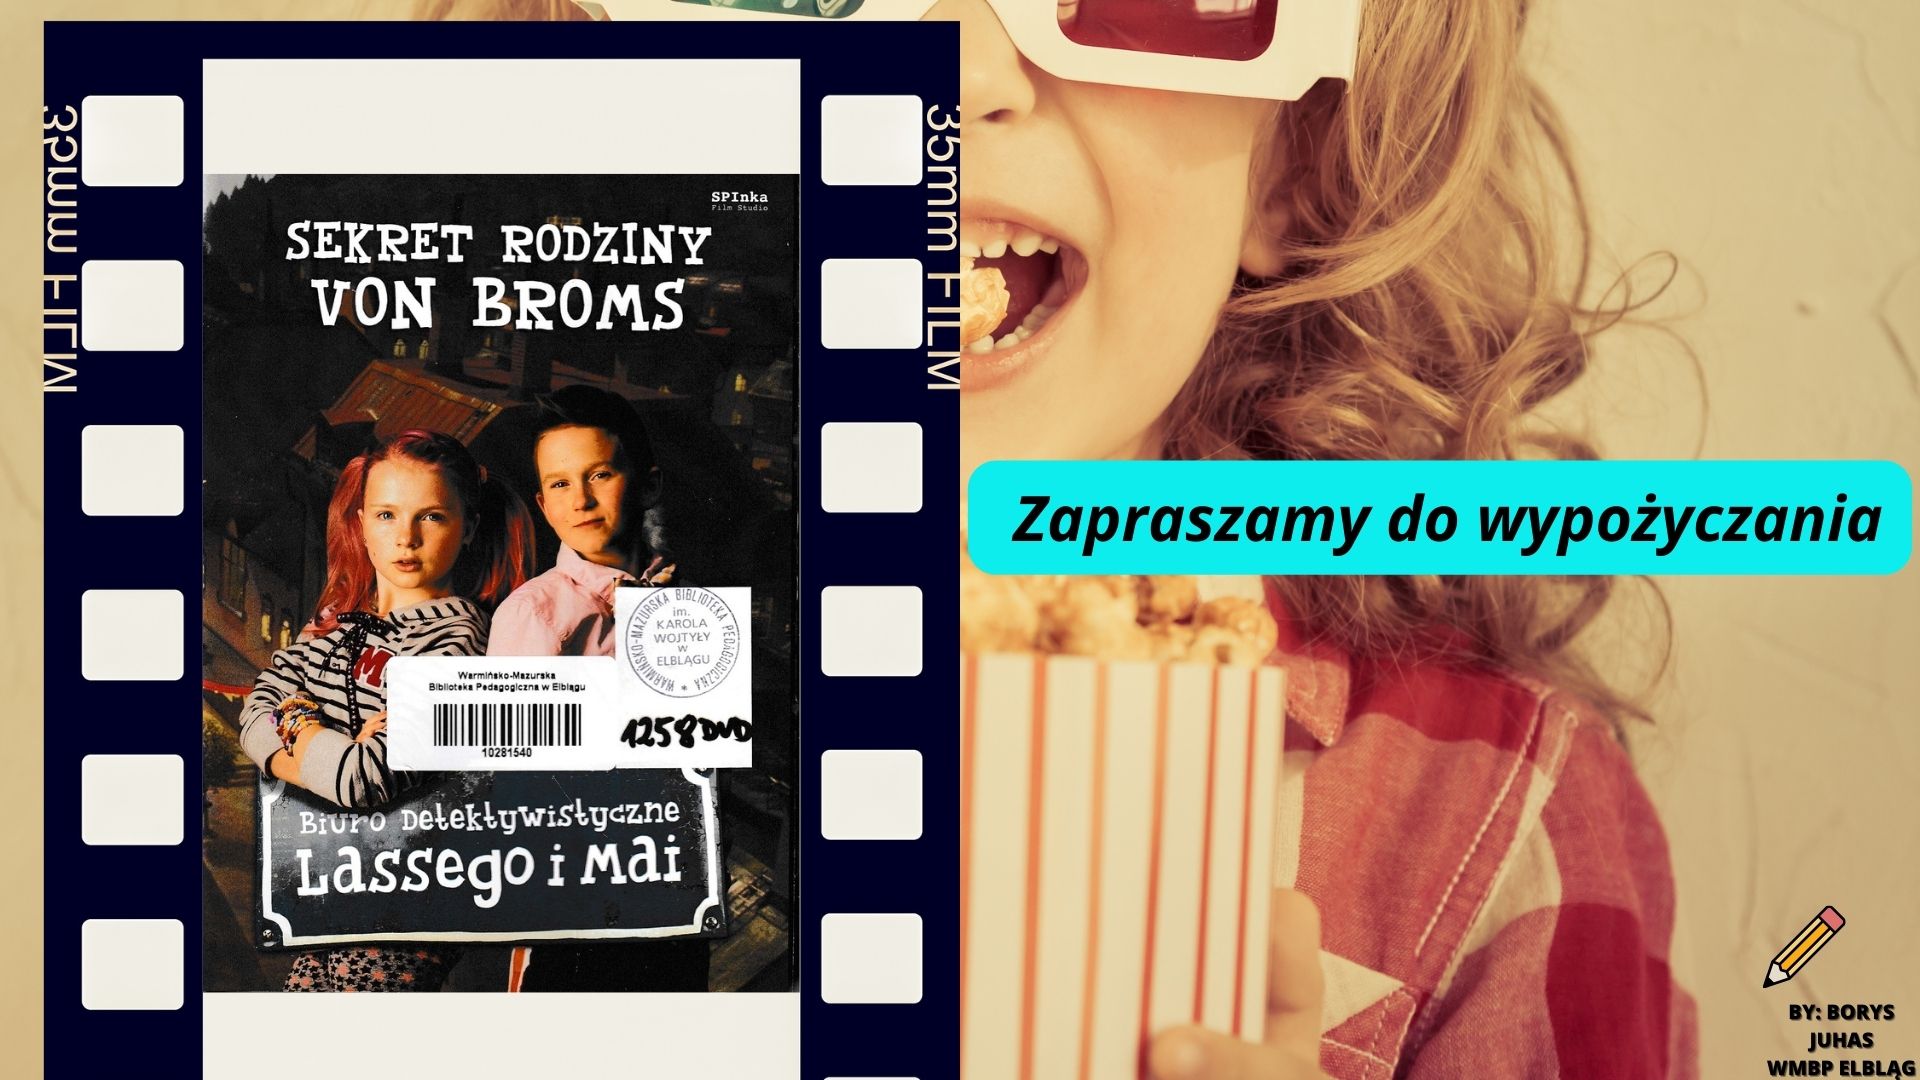 Kino liber Sekrety rodziny von Broms (Biuro detektywistyczne Lassego i Mai)